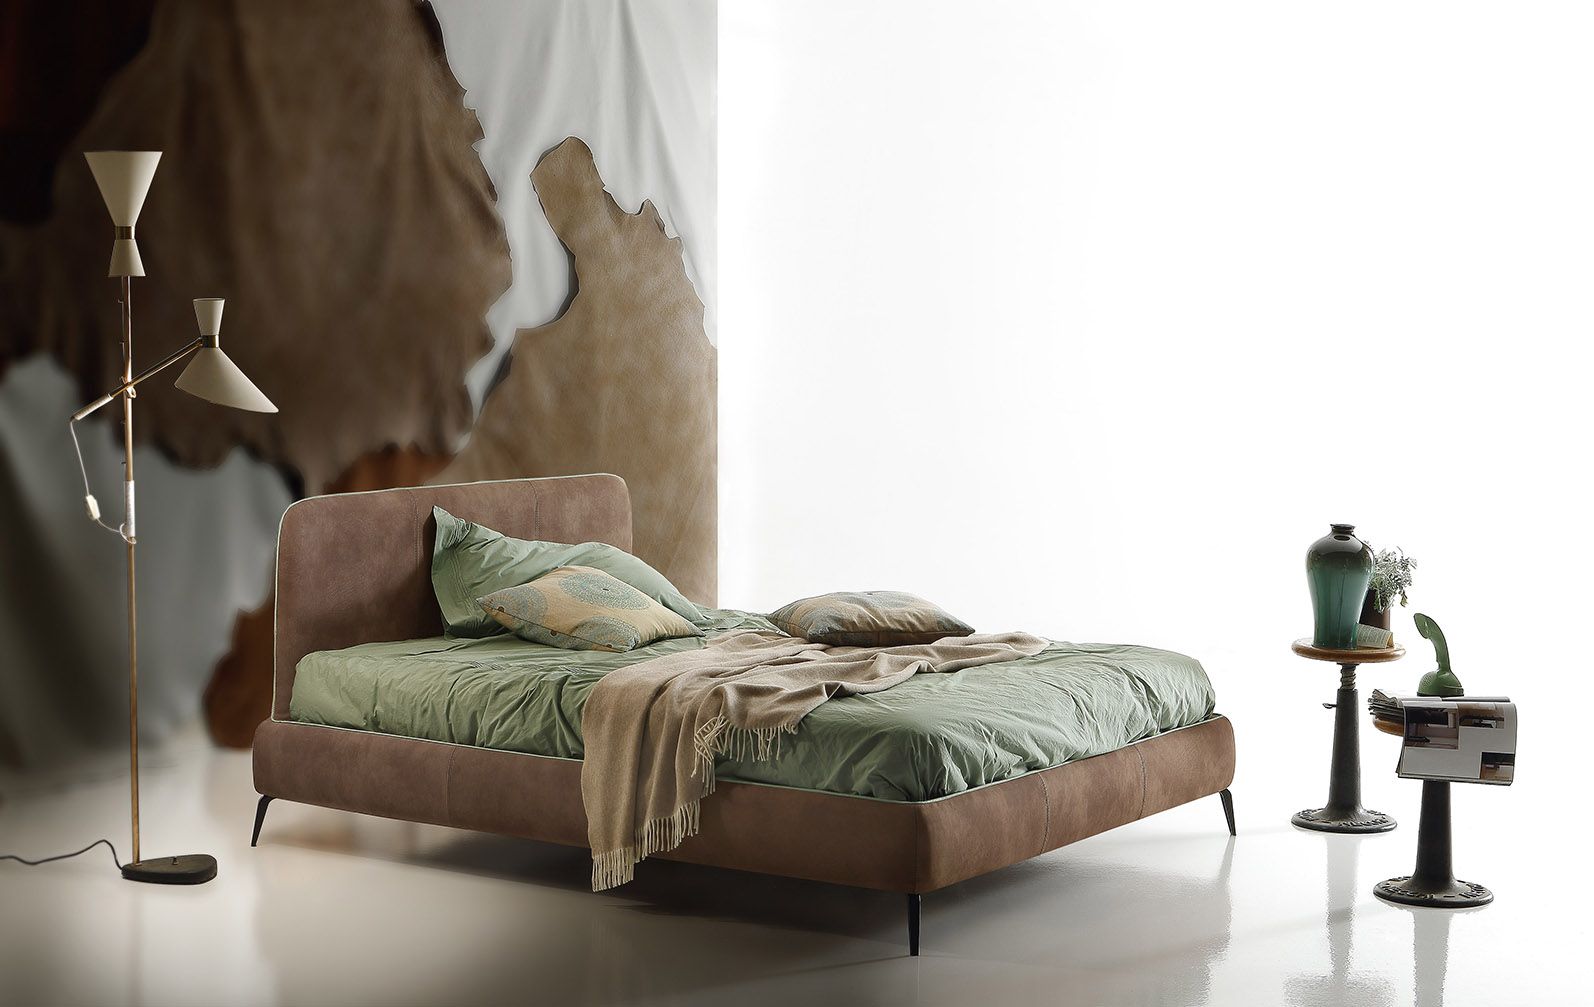 Односпальная кровать Aris by Ditre Italia